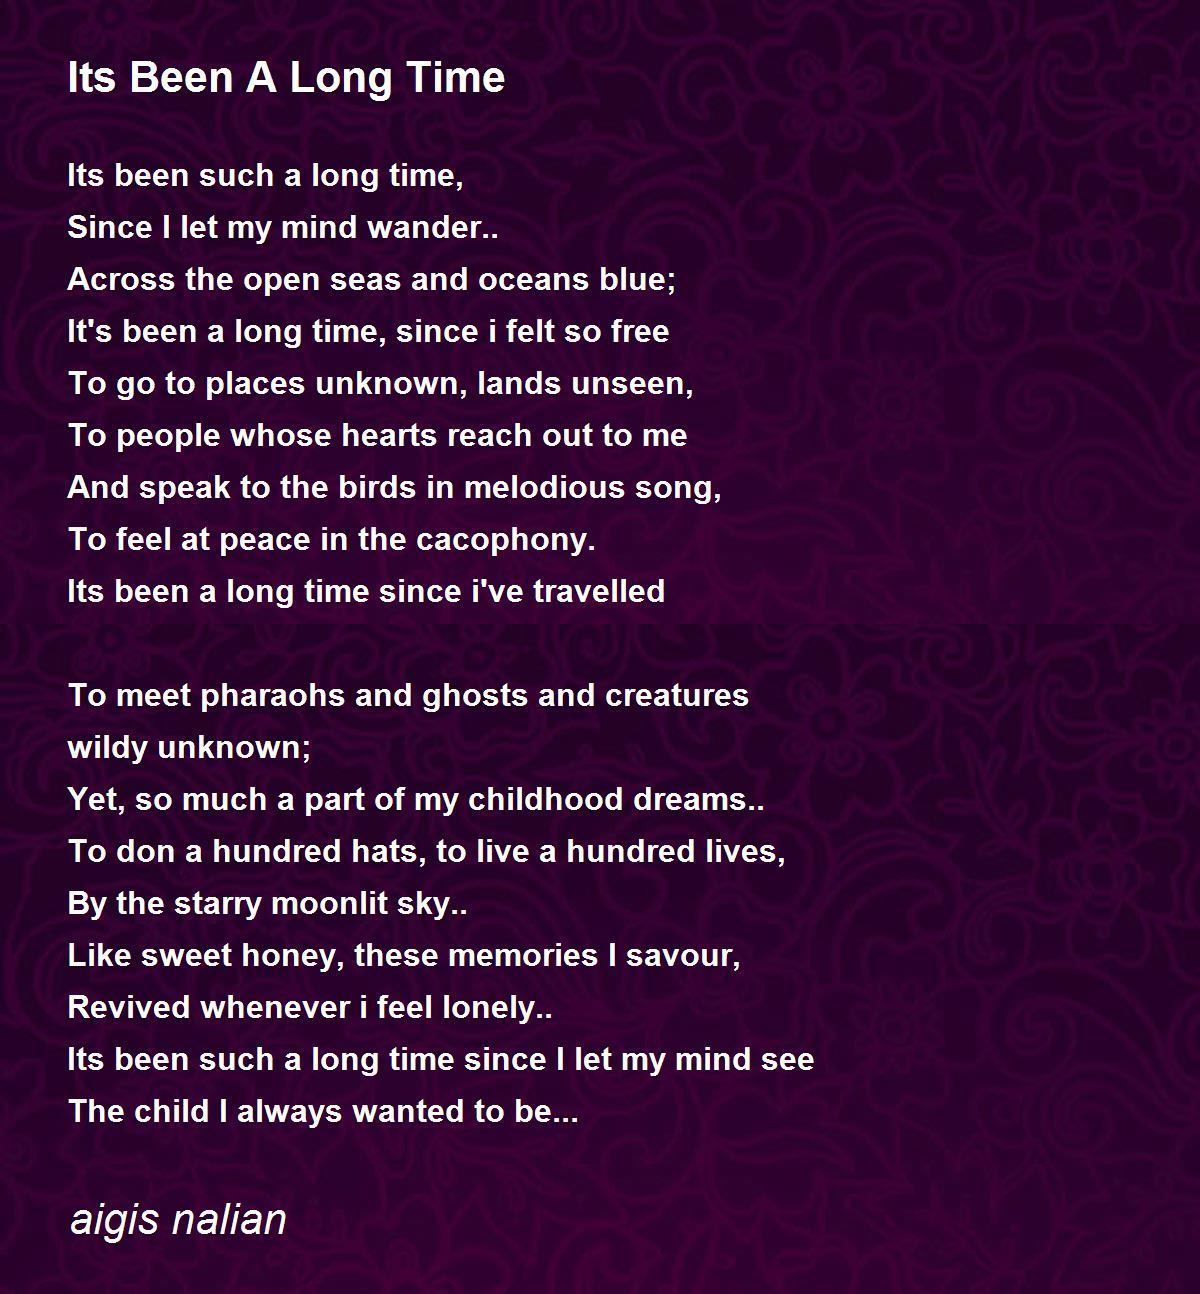 Its Been A Long Time - Its Been A Long Time Poem by aigis nalian